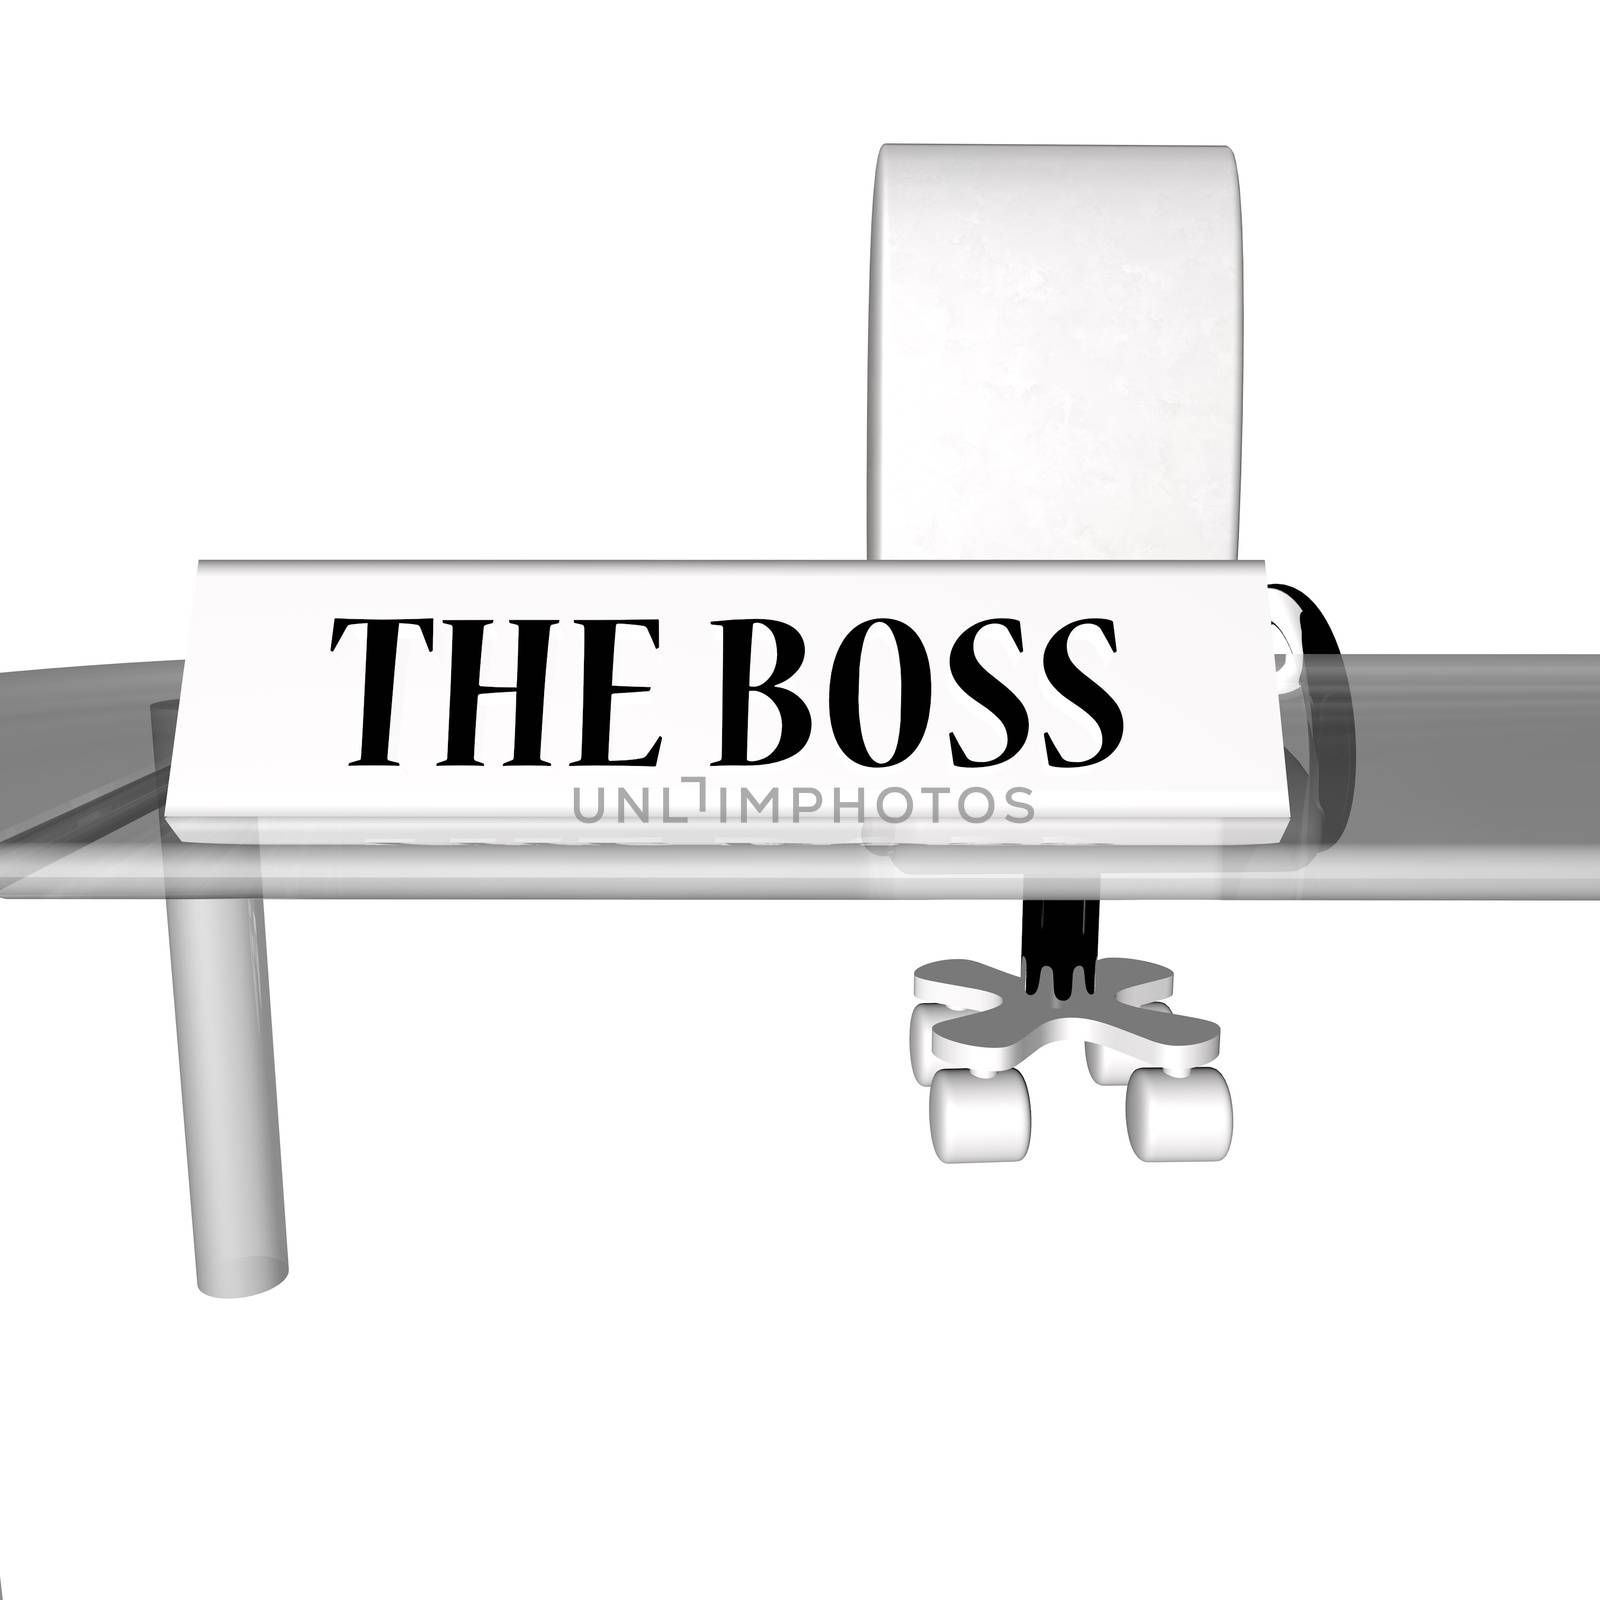 The Boss desk, over white, 3d render